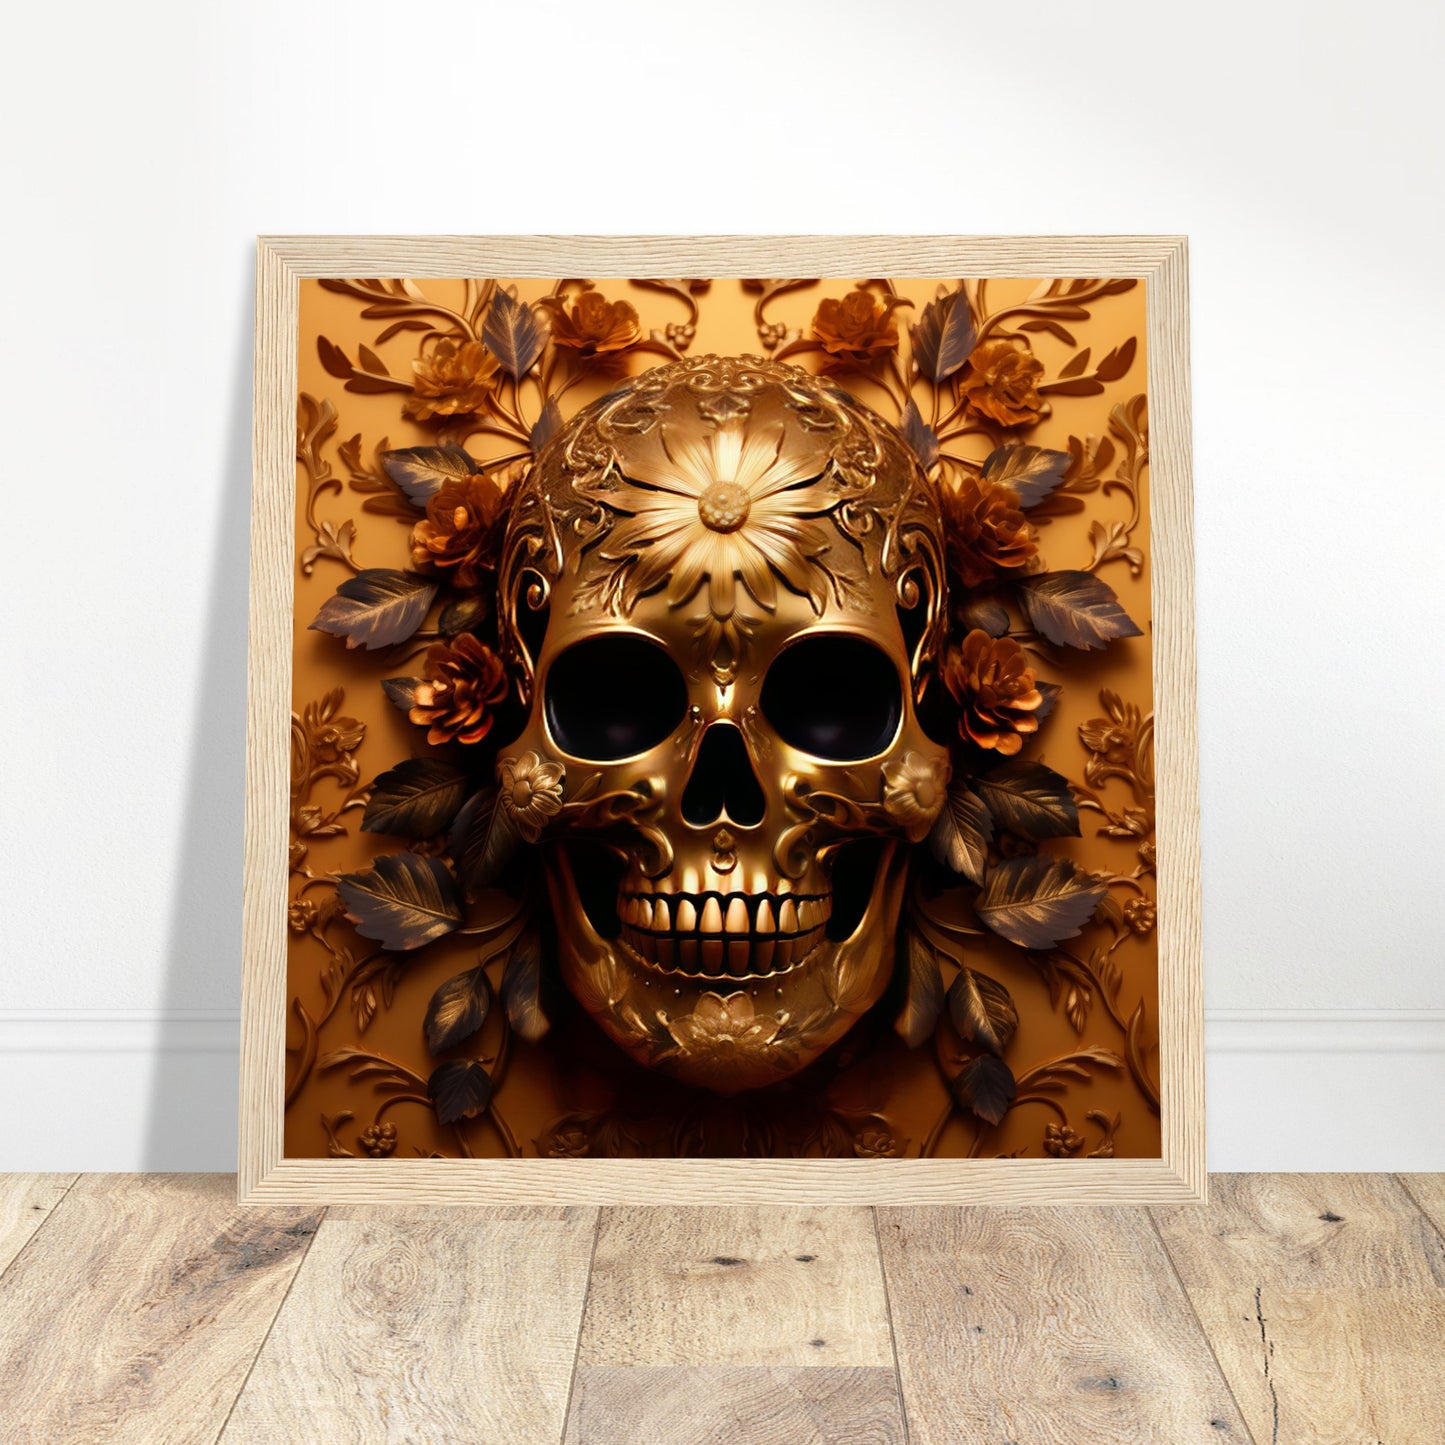 Golden Skull Artwork - Print Room Ltd Wood frame 70x70 cm / 28x28"